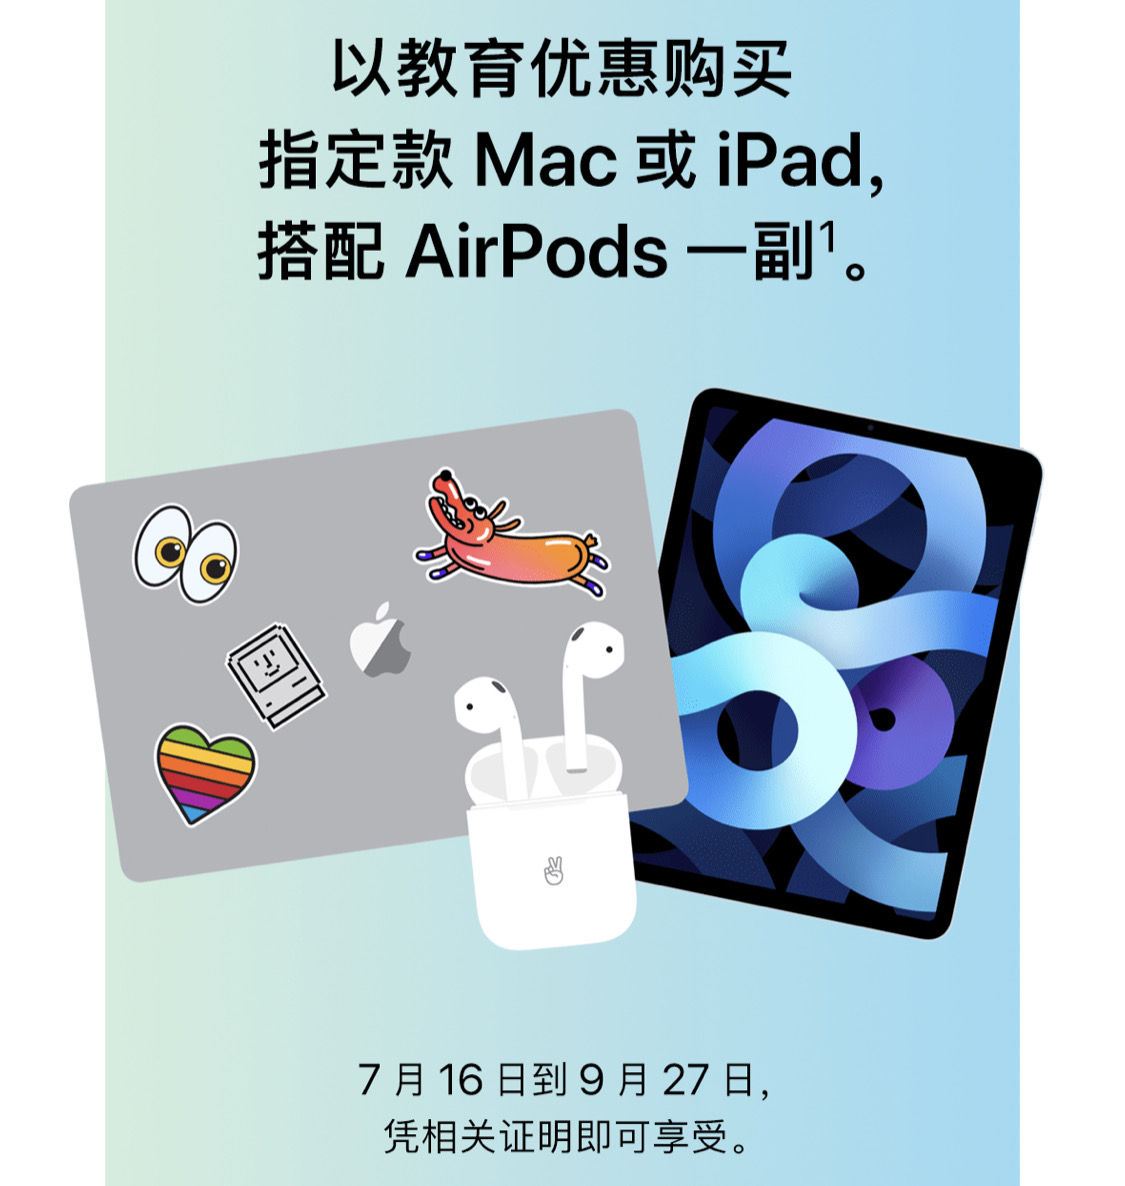 2021年苹果教育优惠 MACBOOK 9折送Airpods